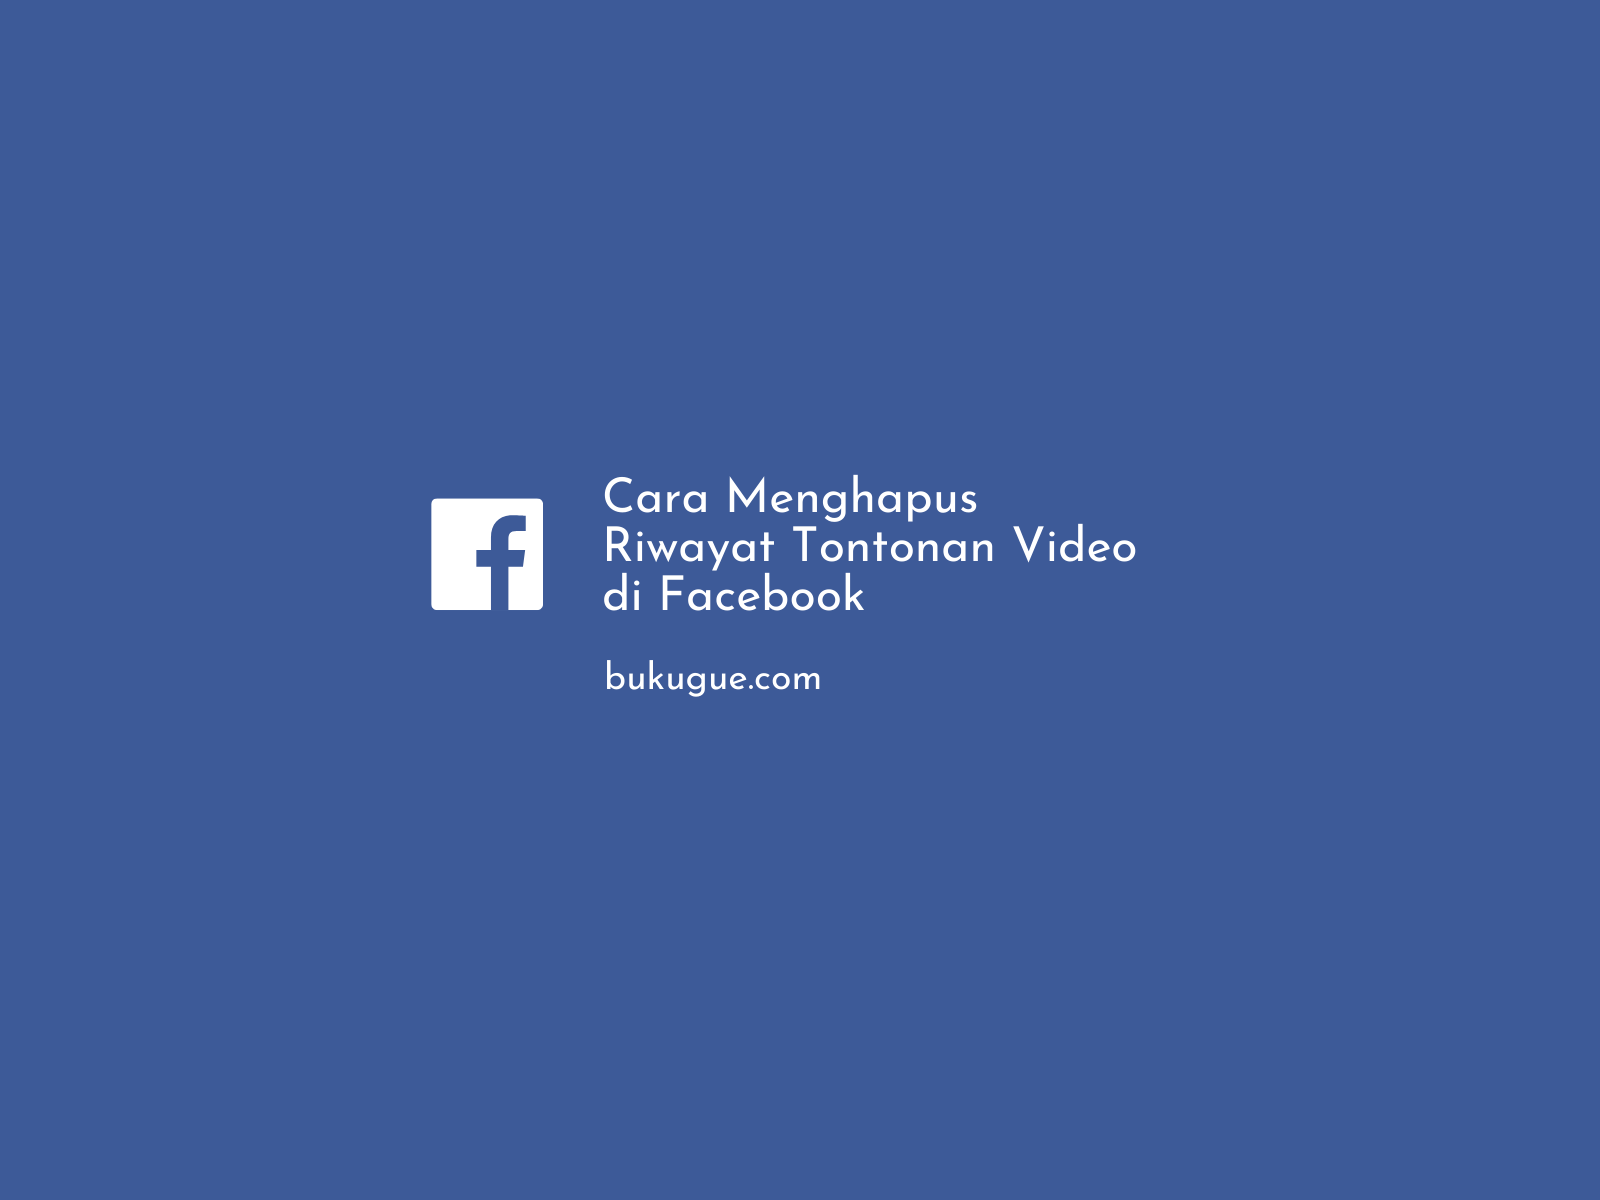 Cara Menghapus Video Di Fb. Cara Menghapus Riwayat Video Yang Ditonton Di Facebook (bisa